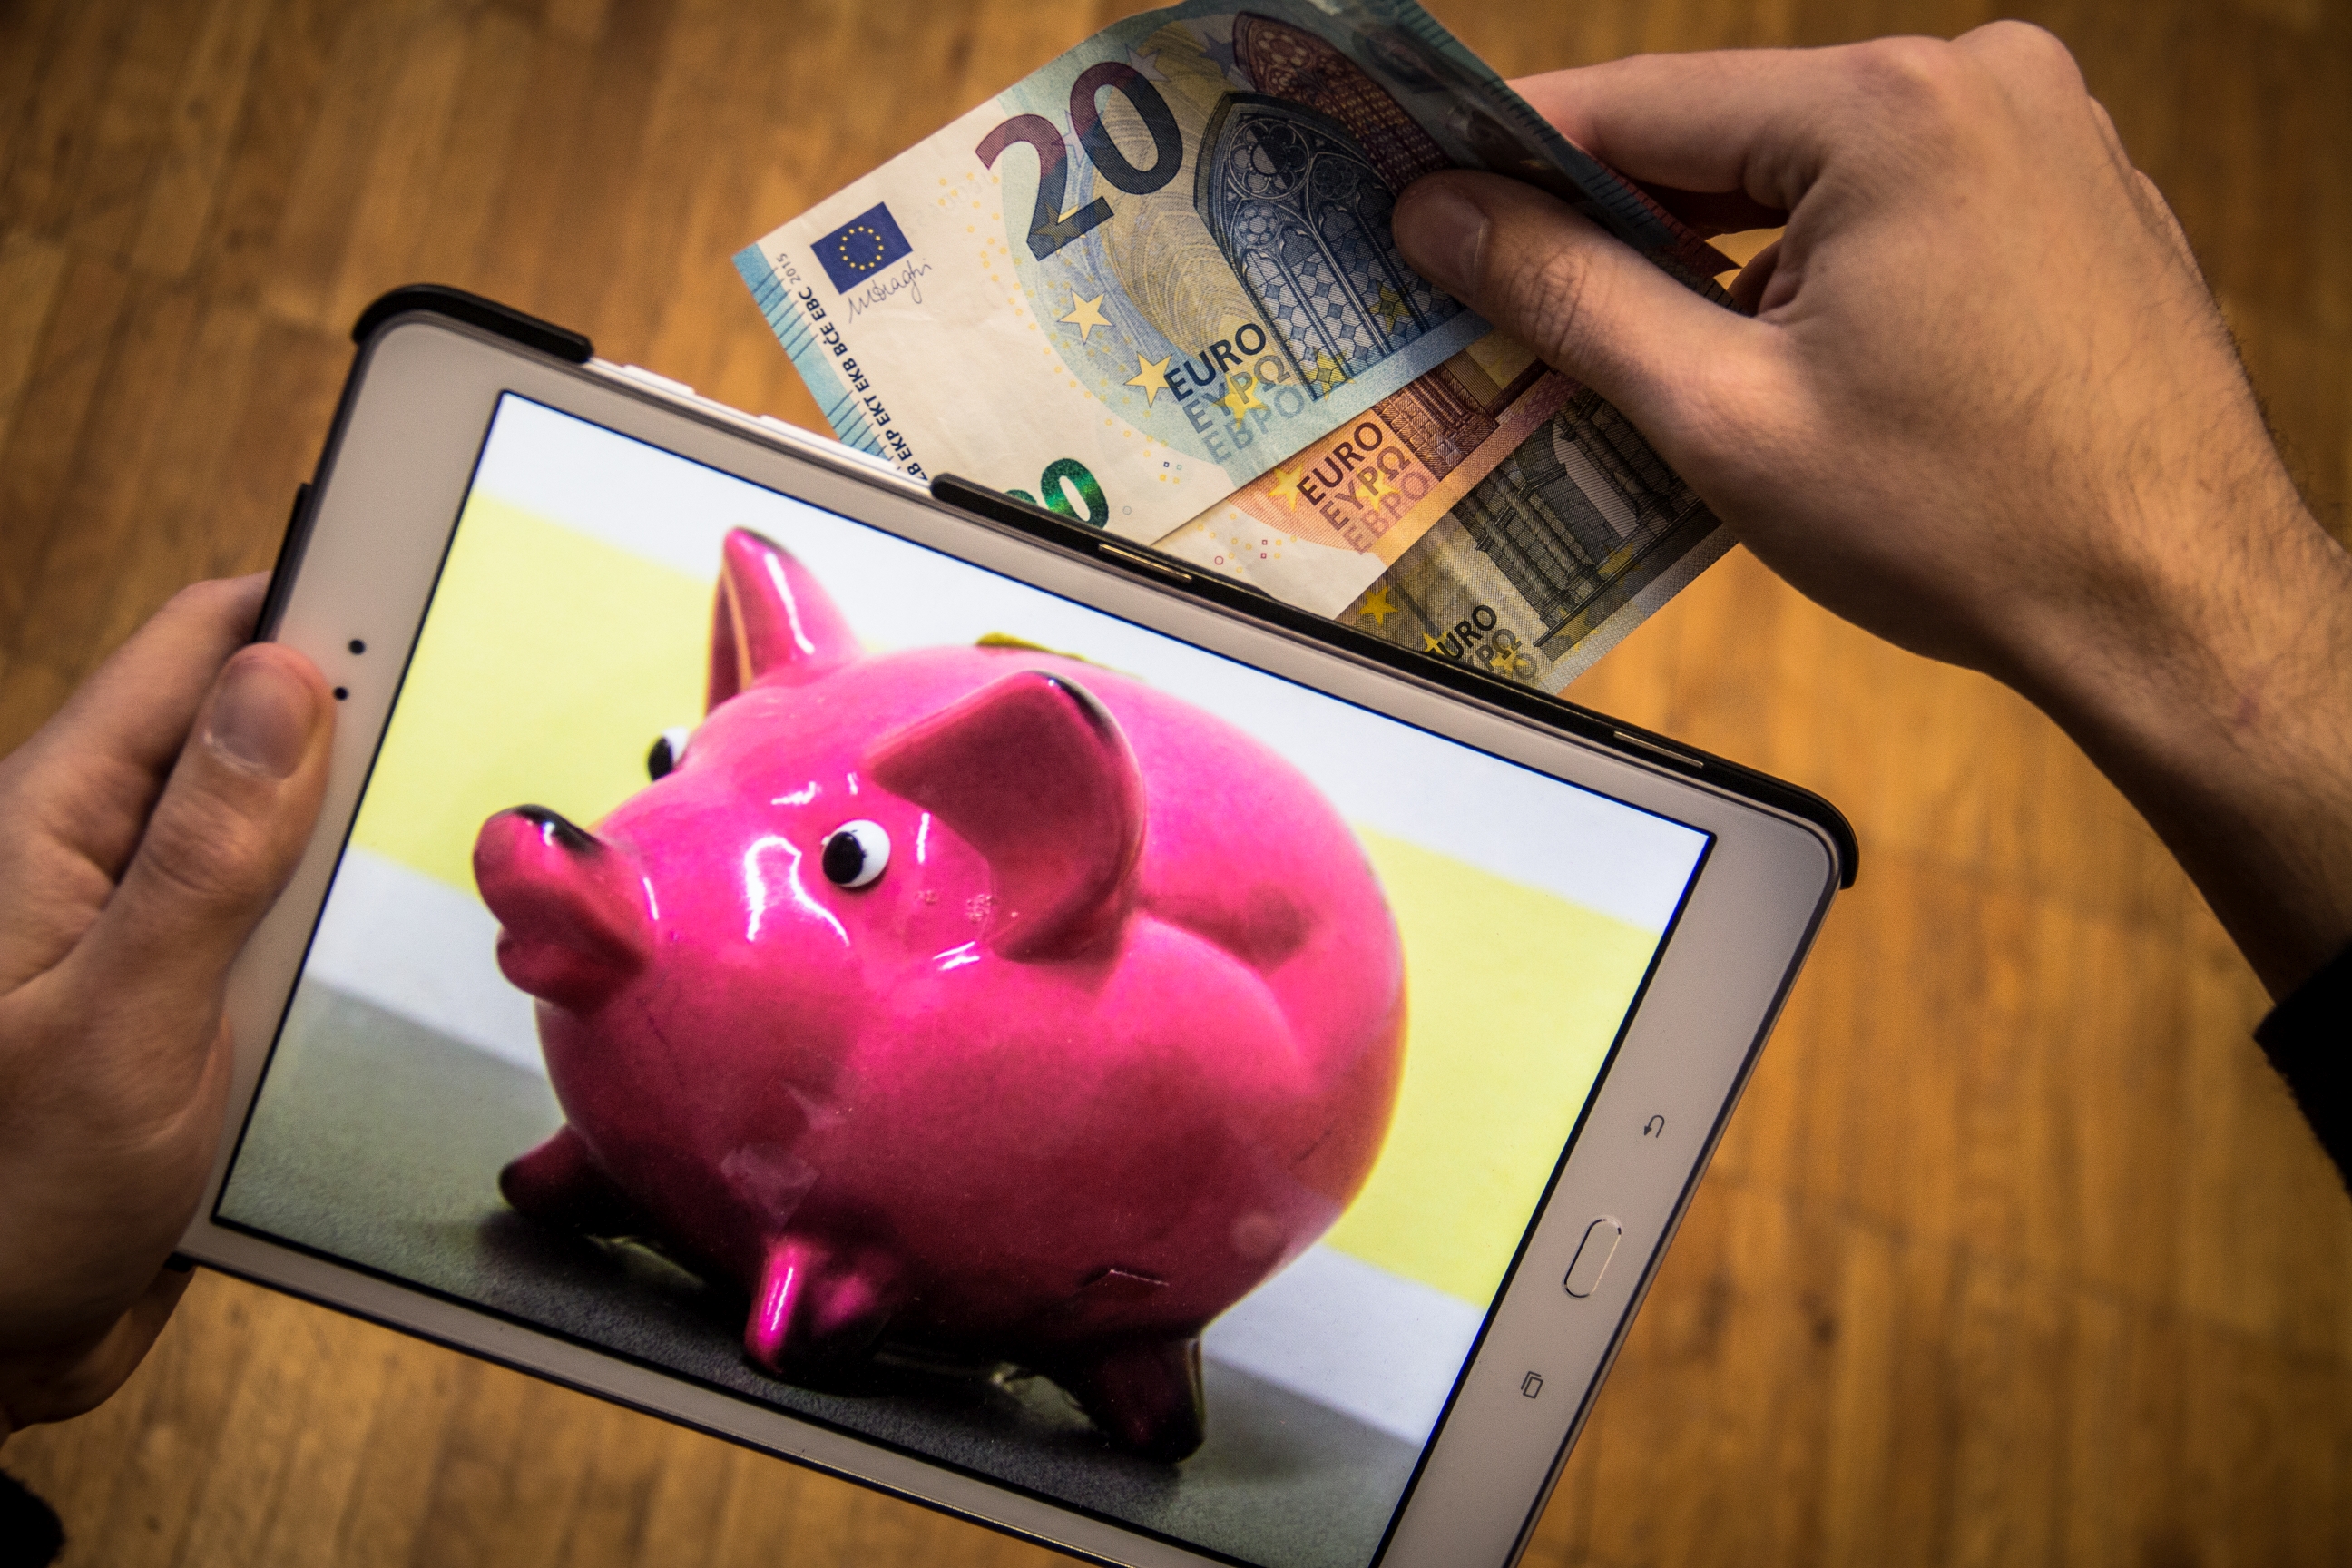 Auf einem Tablet ist ein Sparschwein abgebildet. Eine Hand steckt Geldscheine in das Sparschwein.